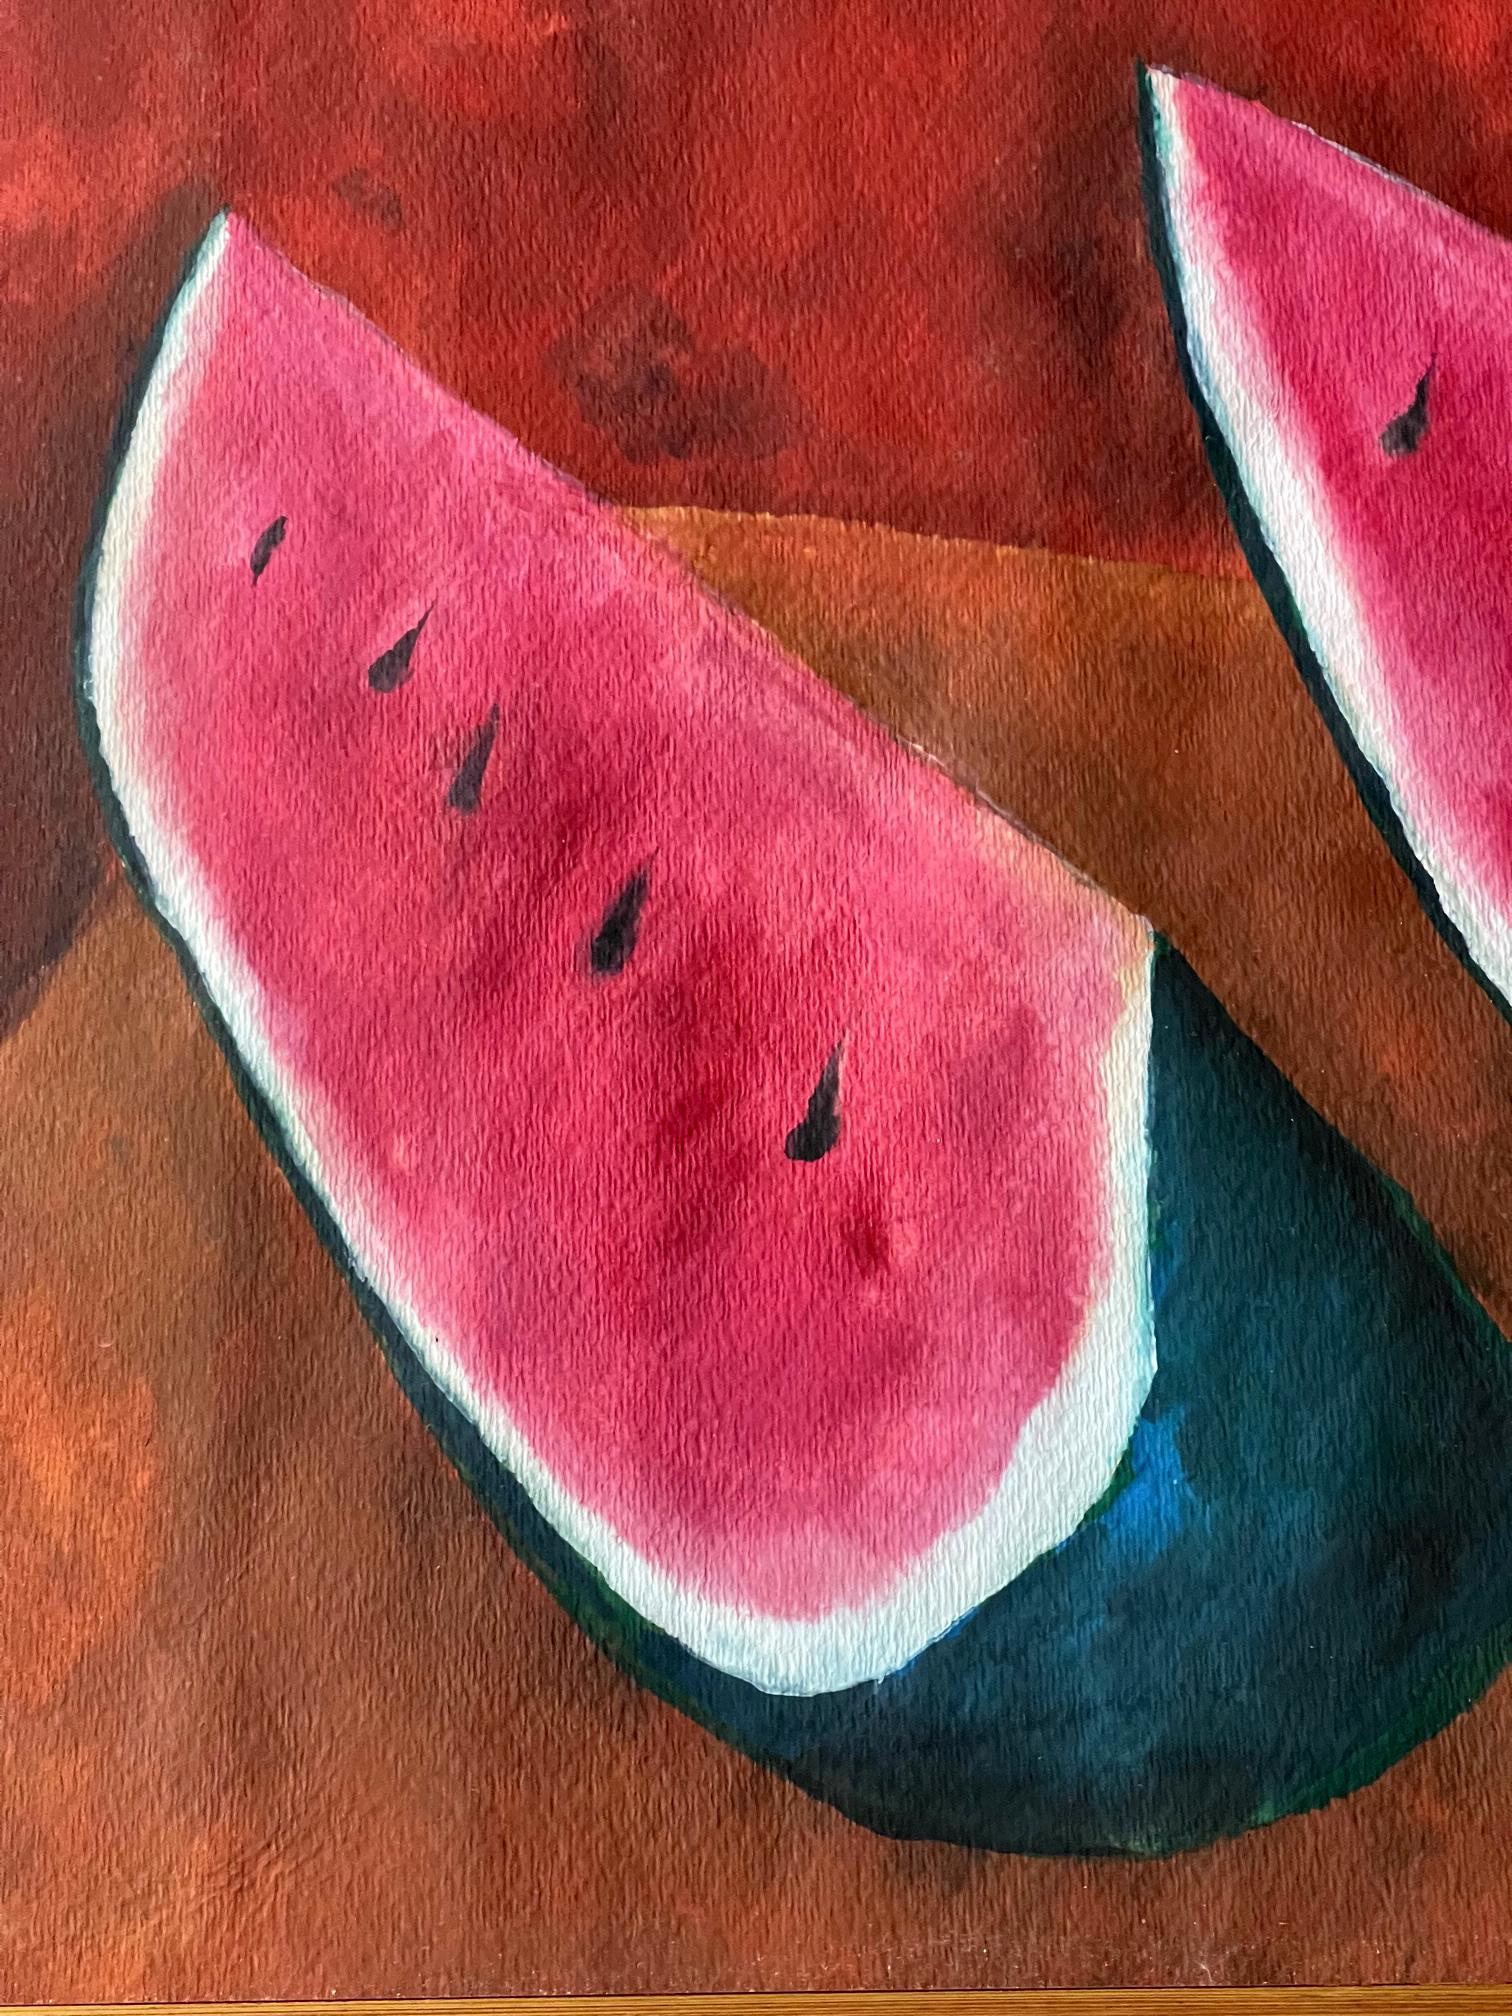 rufino tamayo watermelons